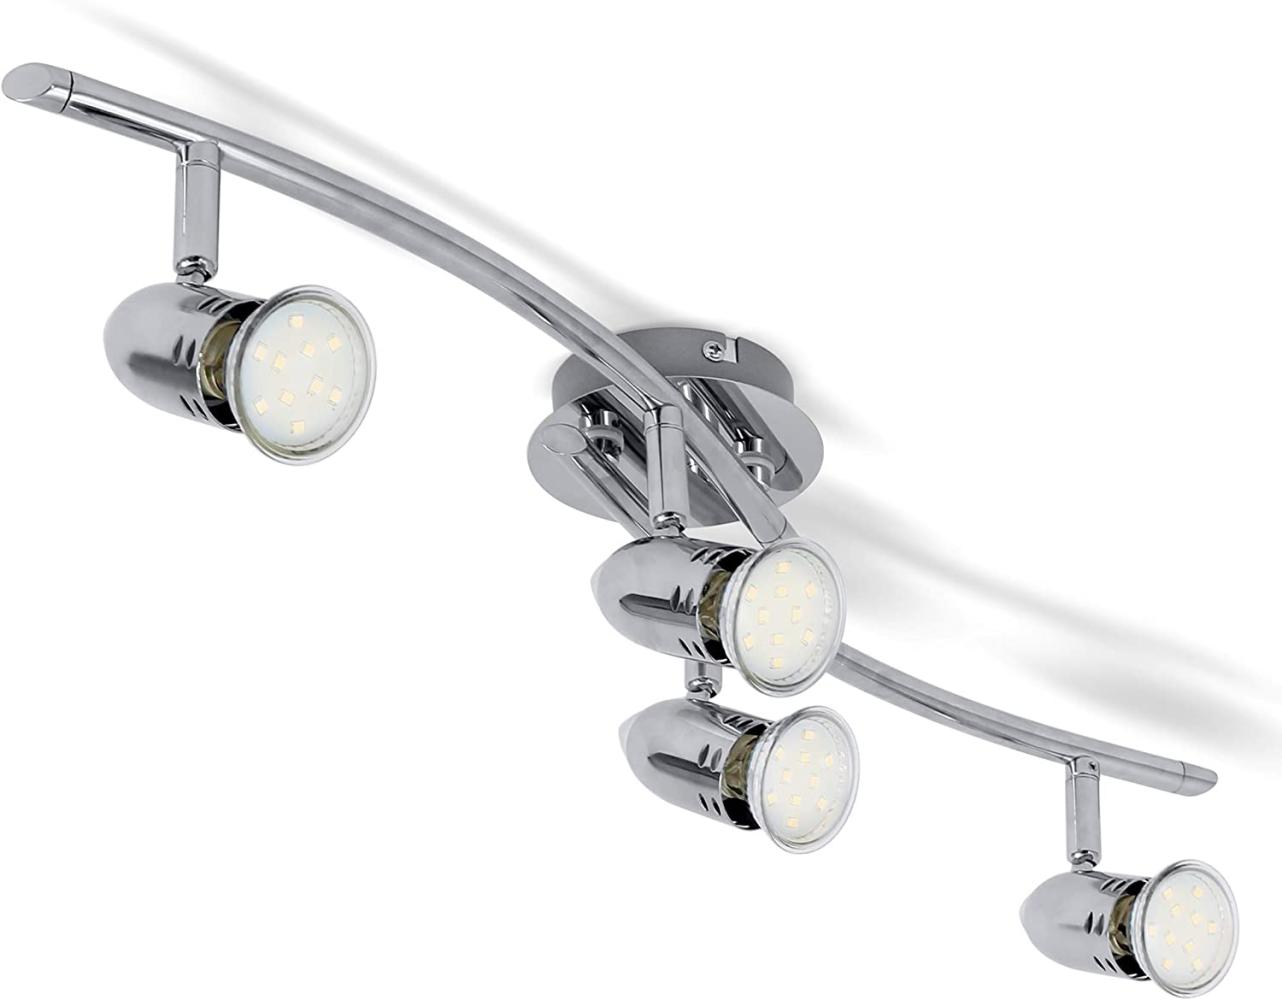 Design LED Deckenlampe 6W-12W Deckenlechte 230V Spot-Strahler GU10 modern chrom 4 Strahler Bild 1